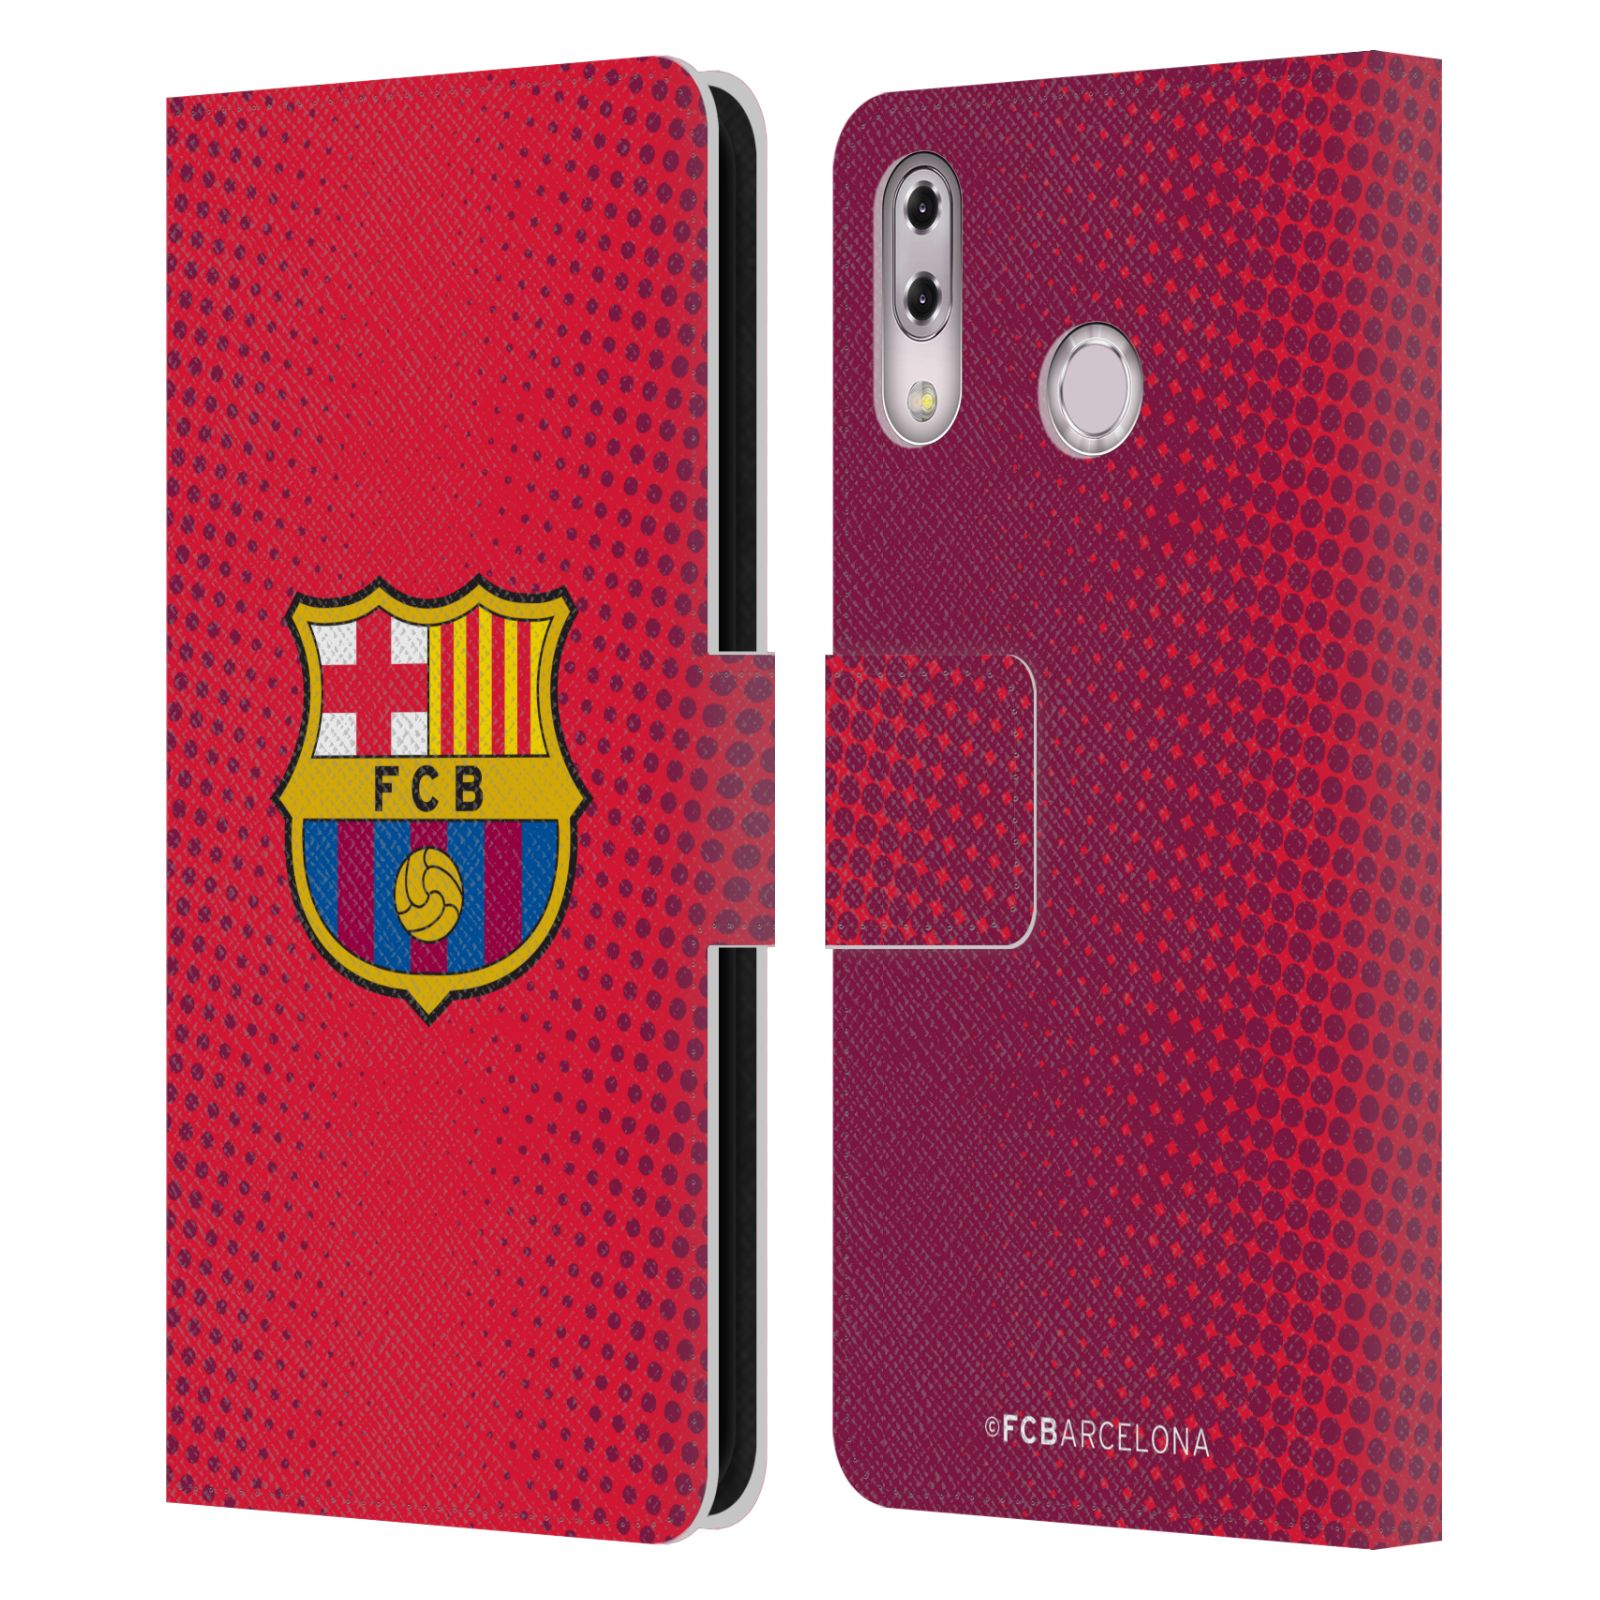 Pouzdro na mobil Asus Zenfone 5z ZS620KL, 5 ZE620KL  - HEAD CASE - FC Barcelona - Tečky červená